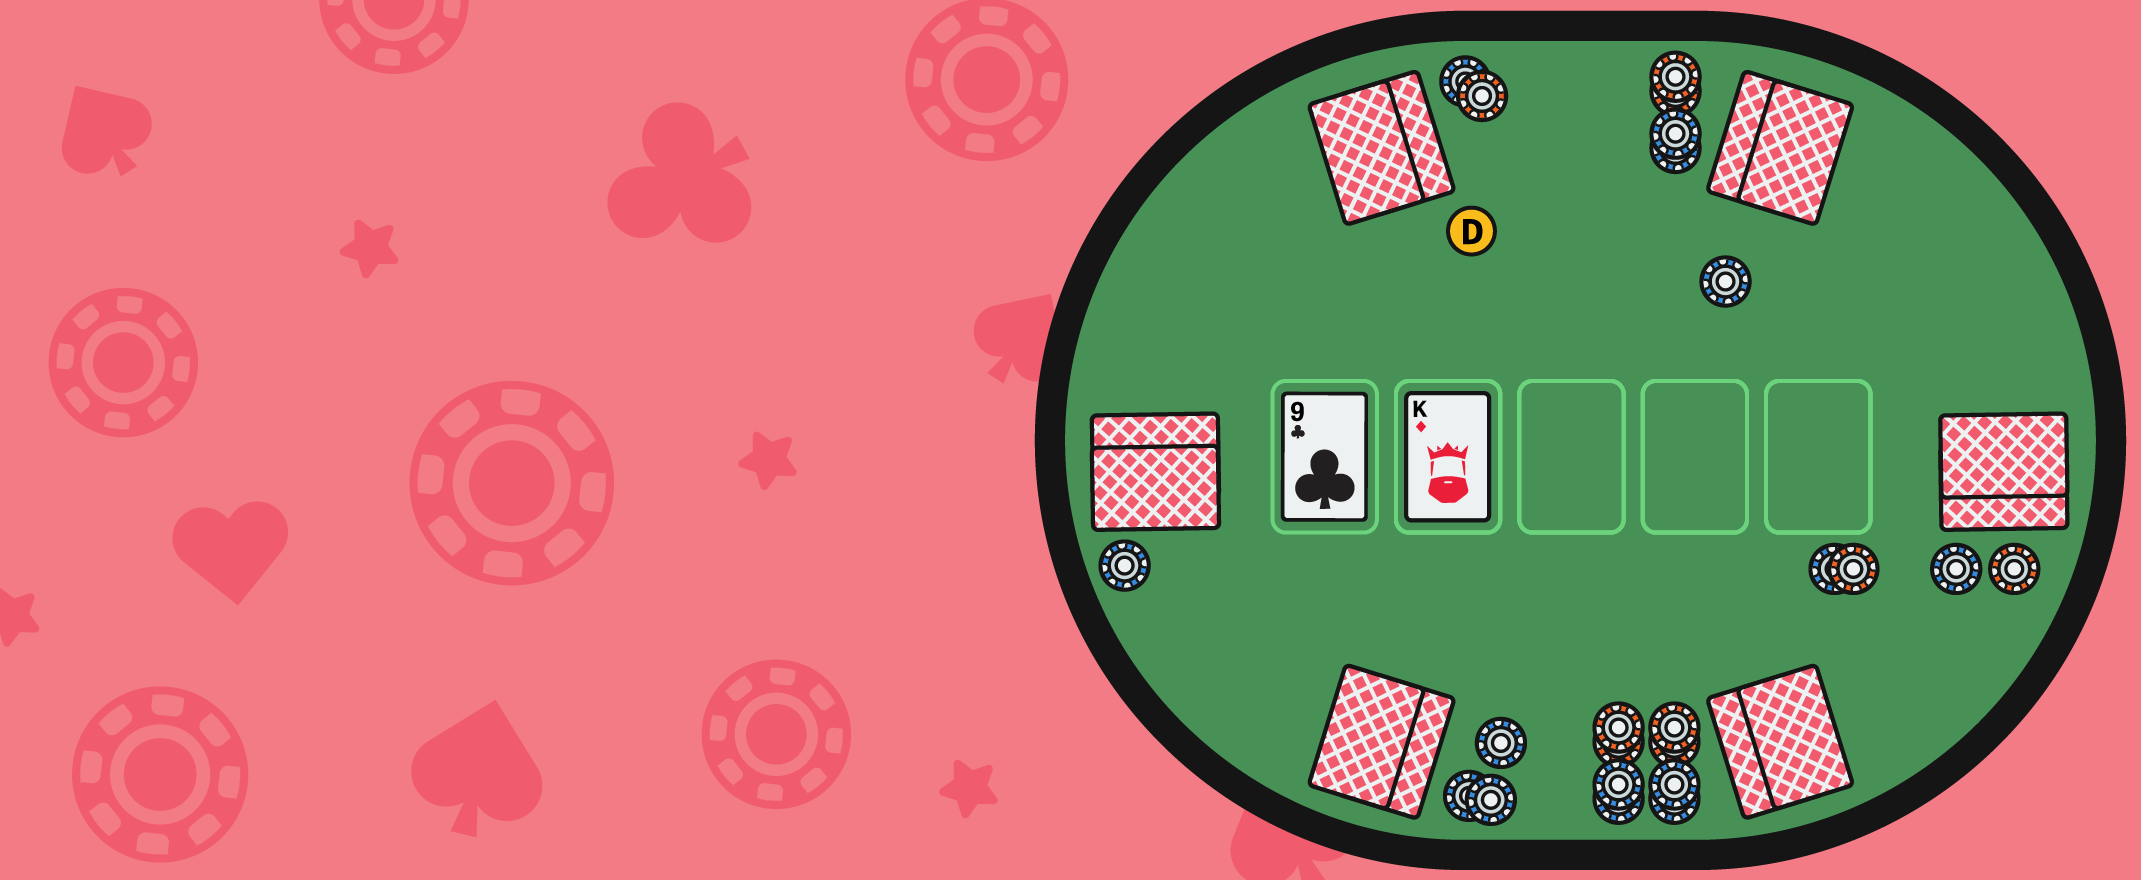 Die Position der Spieler am Poker Tisch